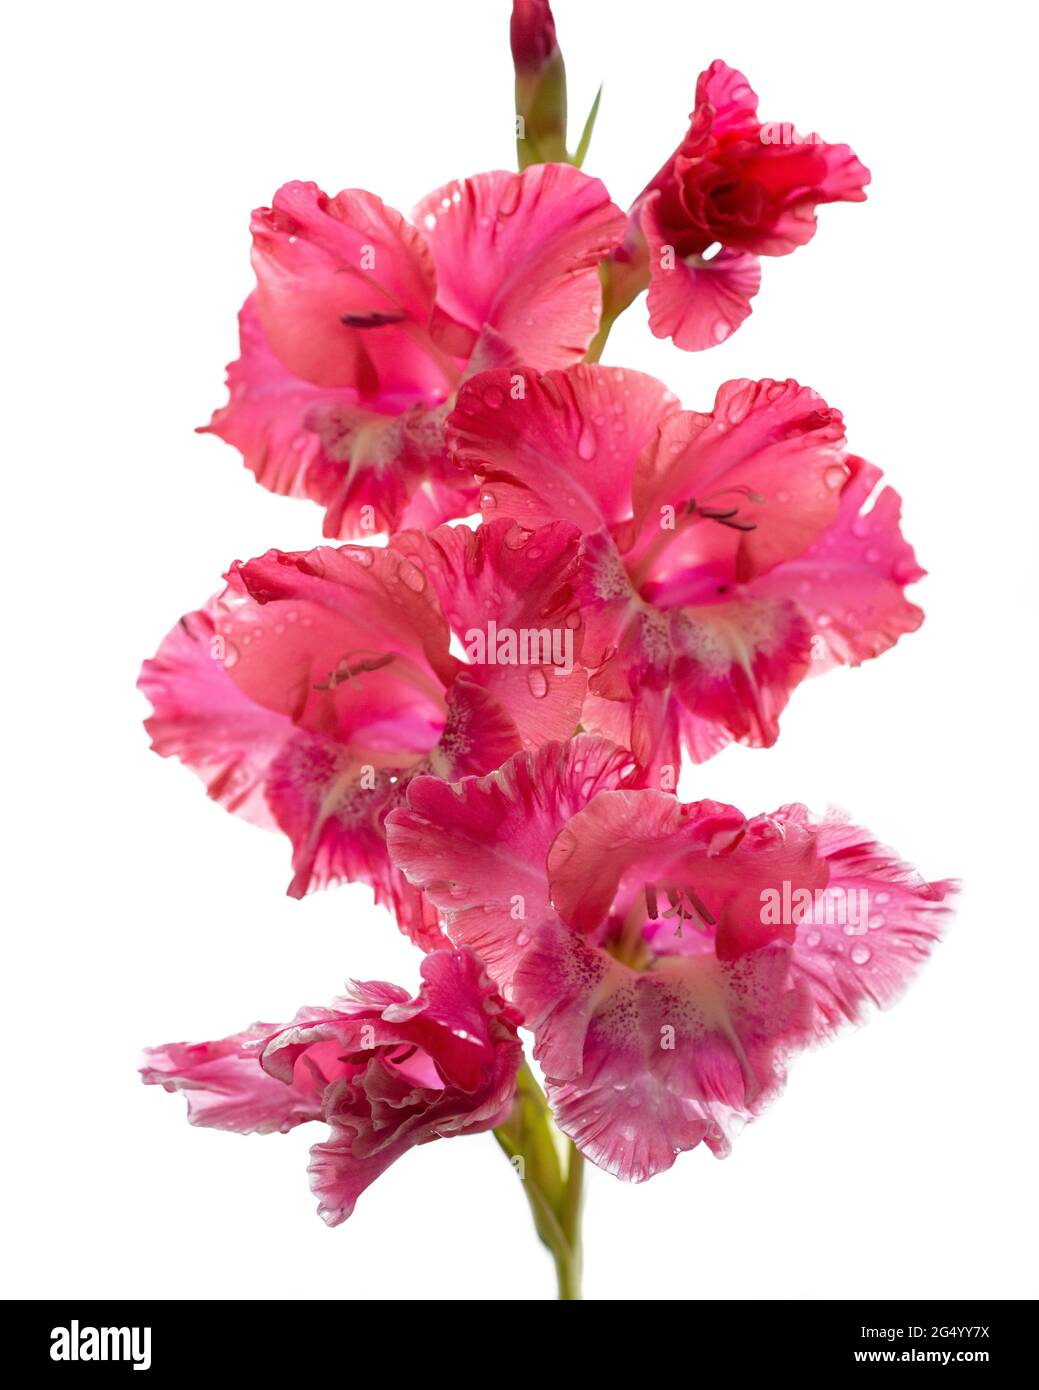 Photo de fleurs de gladiolus rose, magenta, rouge, pétales sur fond blanc. Banque D'Images